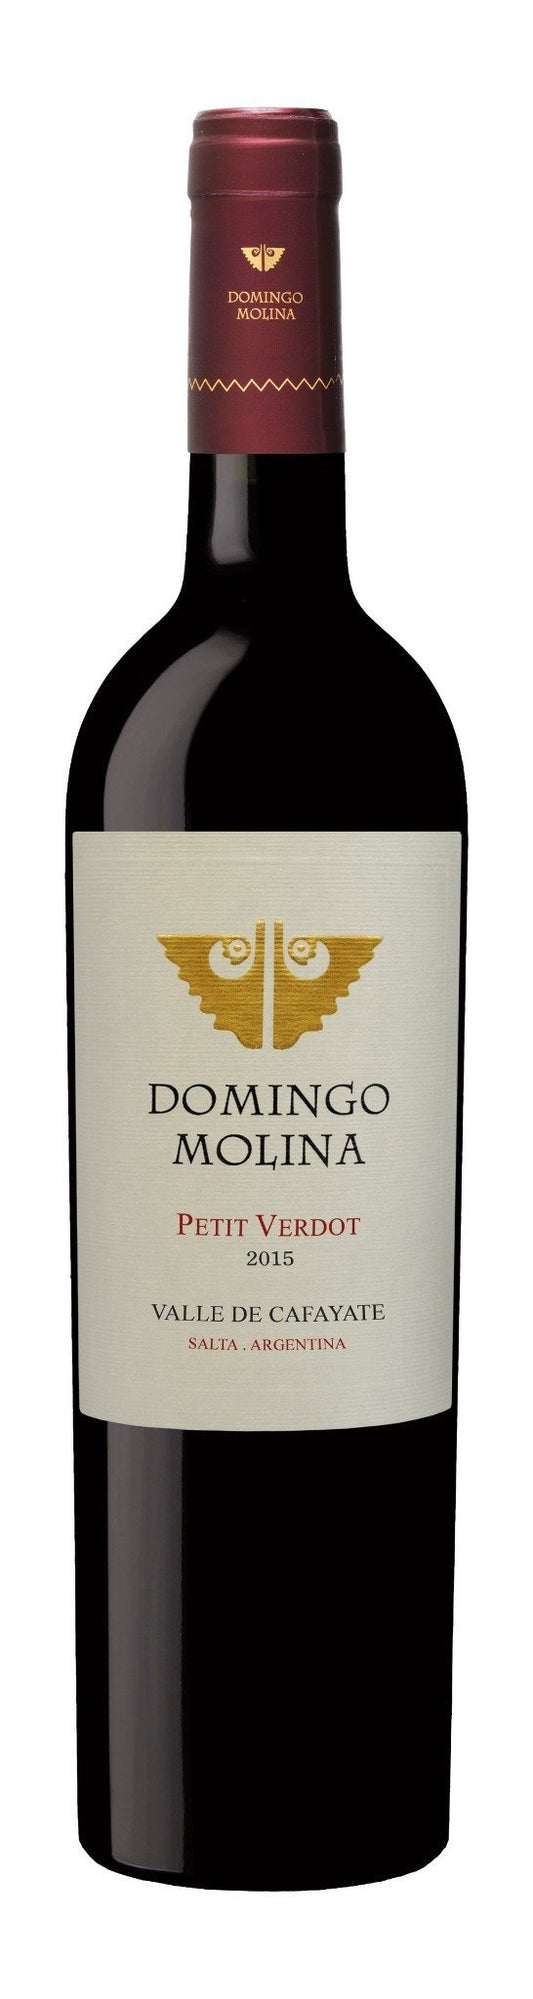 Domingo Molina Petit Verdot - Mi-bodeguita.com